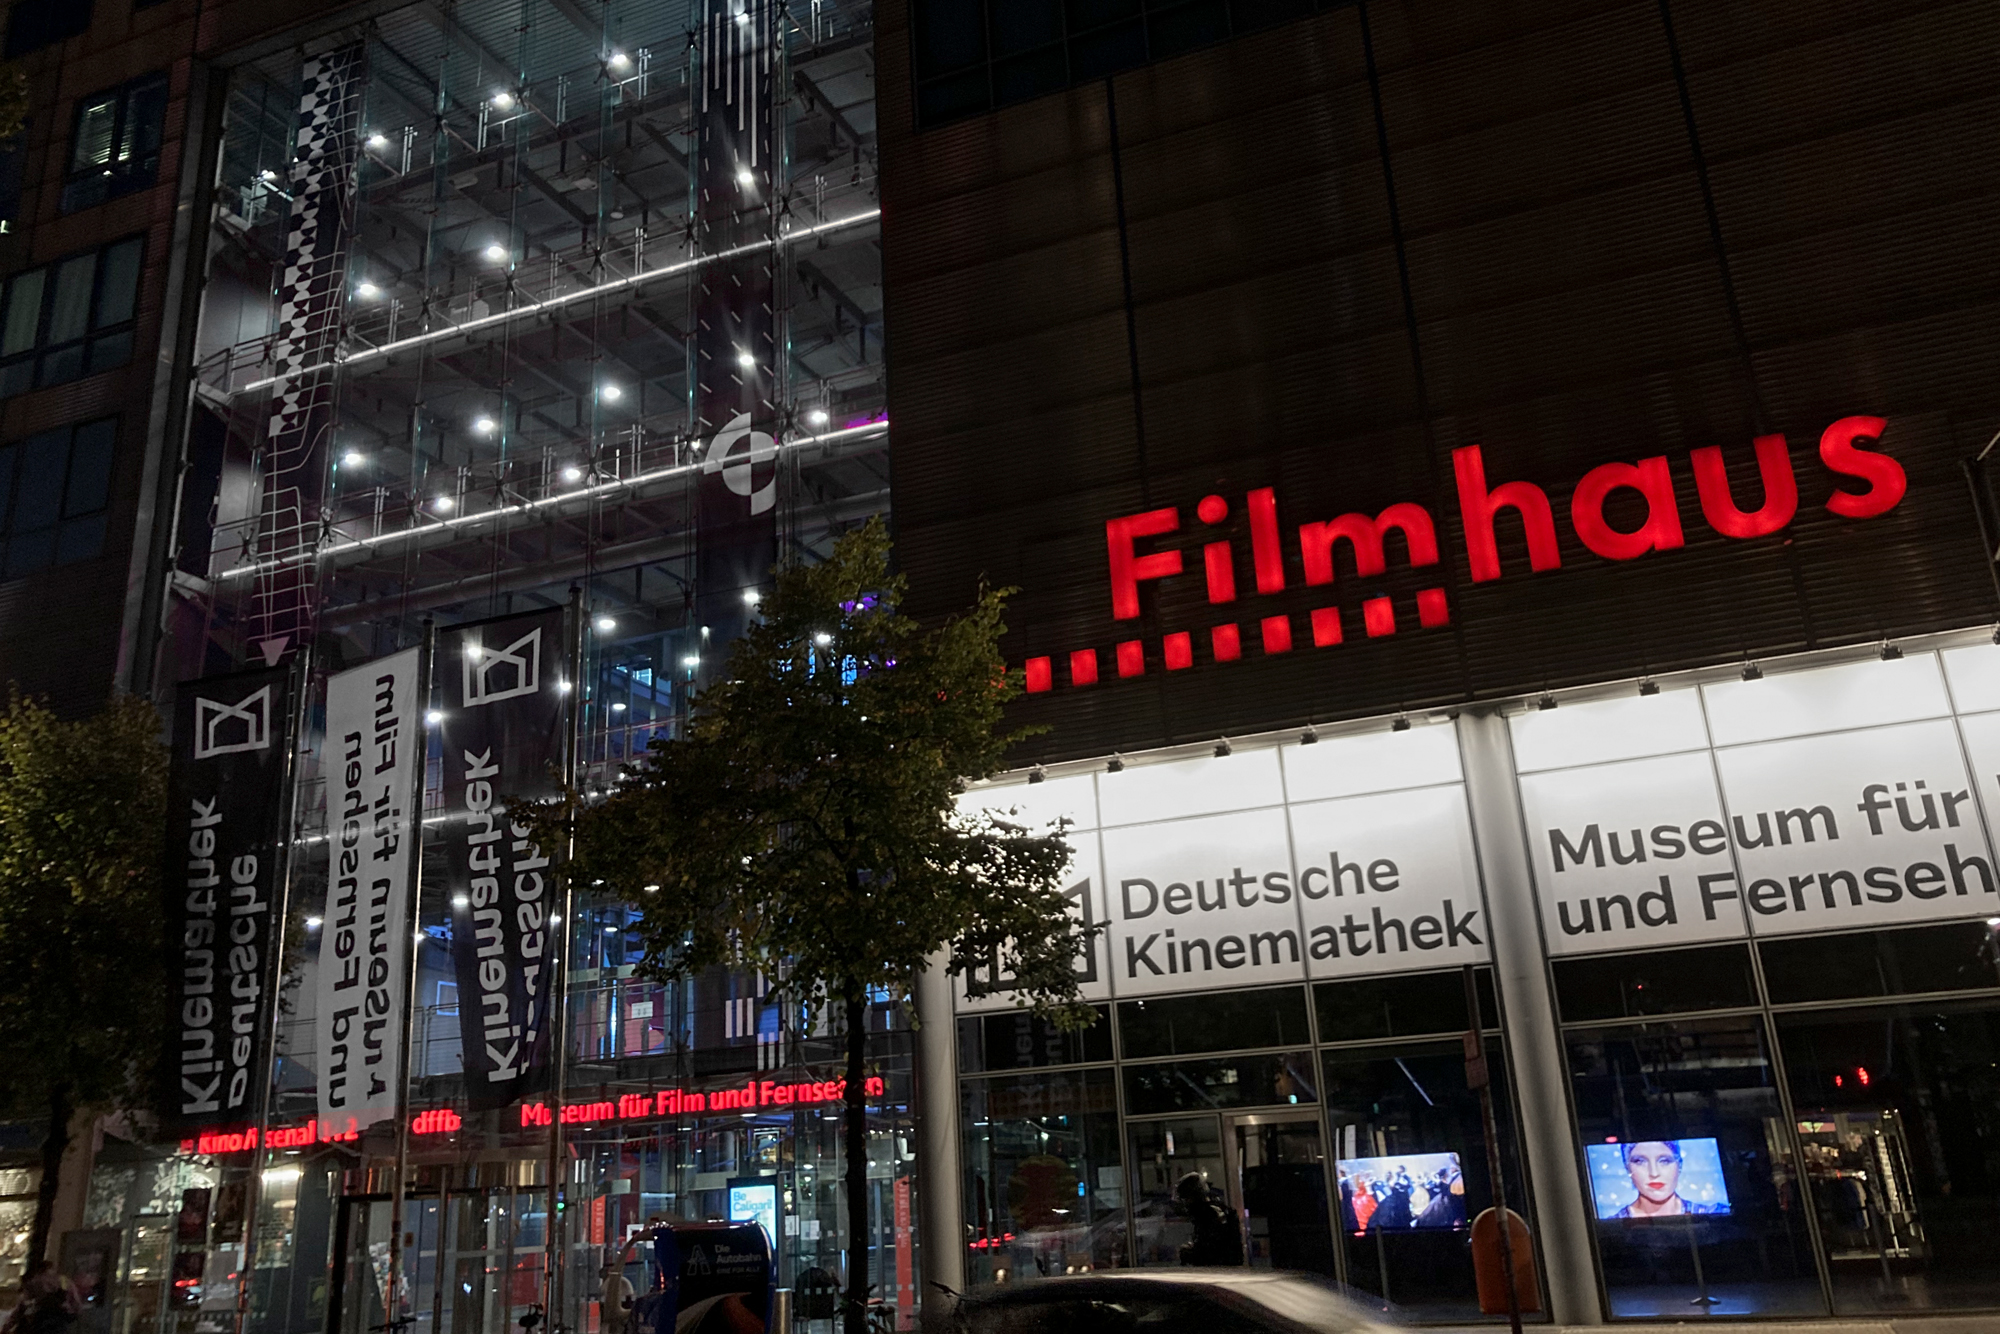 Vorderansicht vom Filmhaus in Berlin mit der rot leuchtenden Aufschrift “Filmhaus”. Darunter sind zwei beleuchtete, weiße Flächen. Darauf steht links “Deutsche Kinemathek” und rechts angeschnitten “Museum für / und Fernseh”.